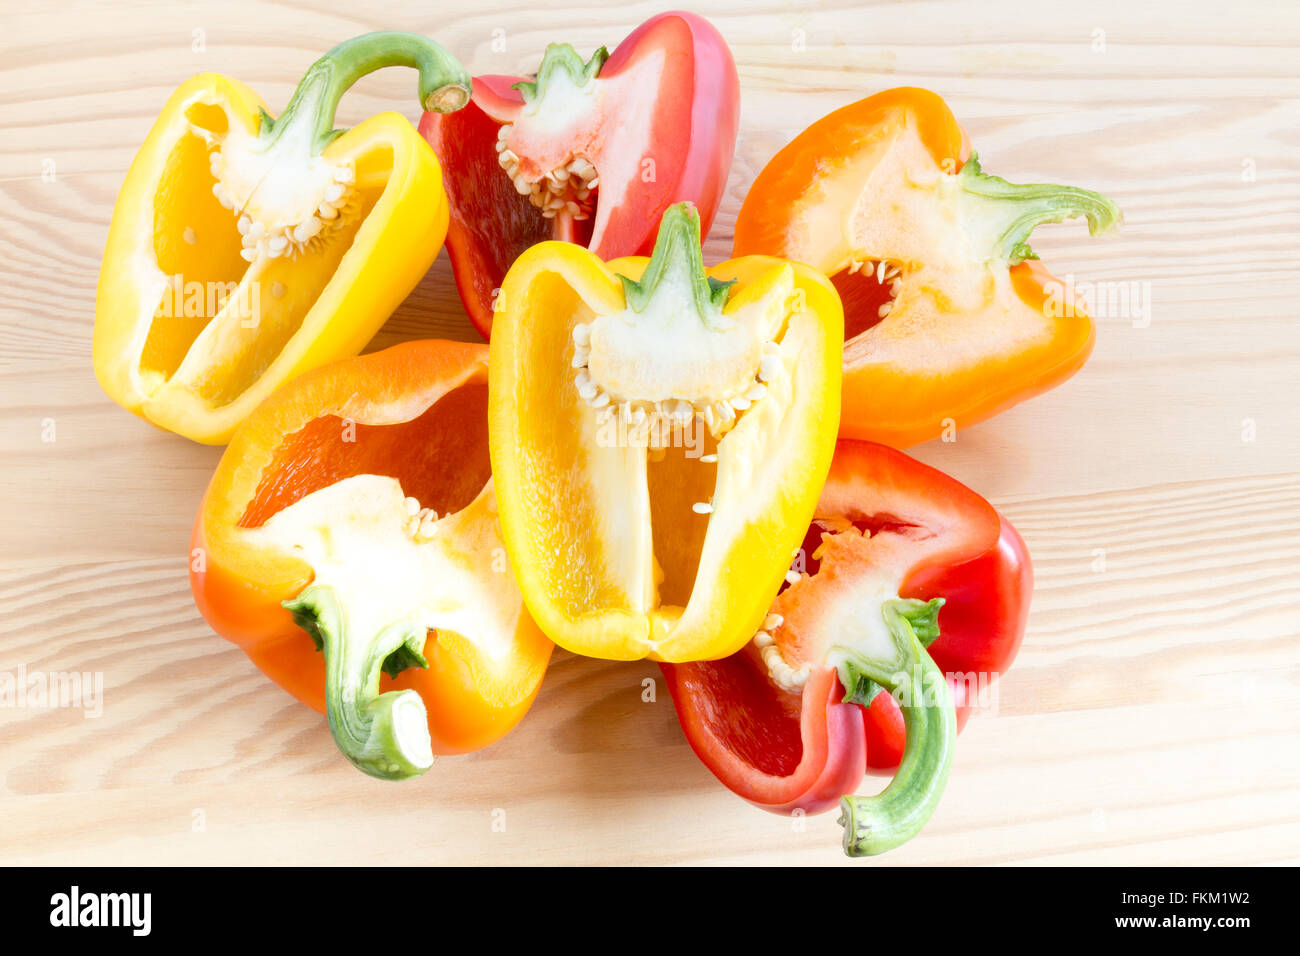 Stapel von drei halbierte Paprika in verschiedenen Farben, Orange, gelb und rot auf Schneidebrett Stockfoto